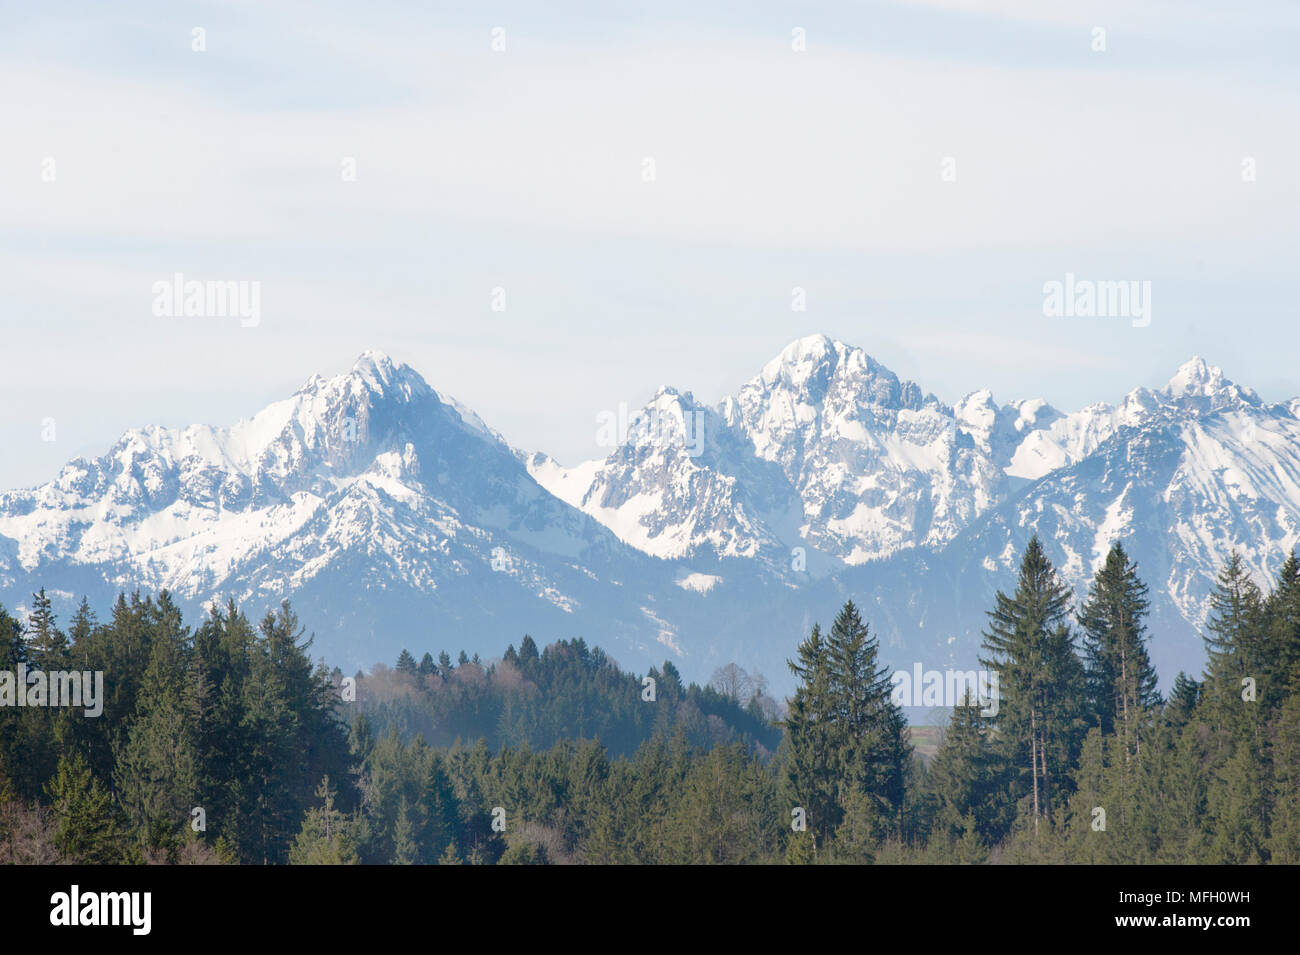 Vista sobre el lago Alpsee mostrando las montañas de izquierda a derecha de Gehrenspitze, Kollenspitze, Haldensee, Tannheimer Berge, Baviera, Alemania Foto de stock